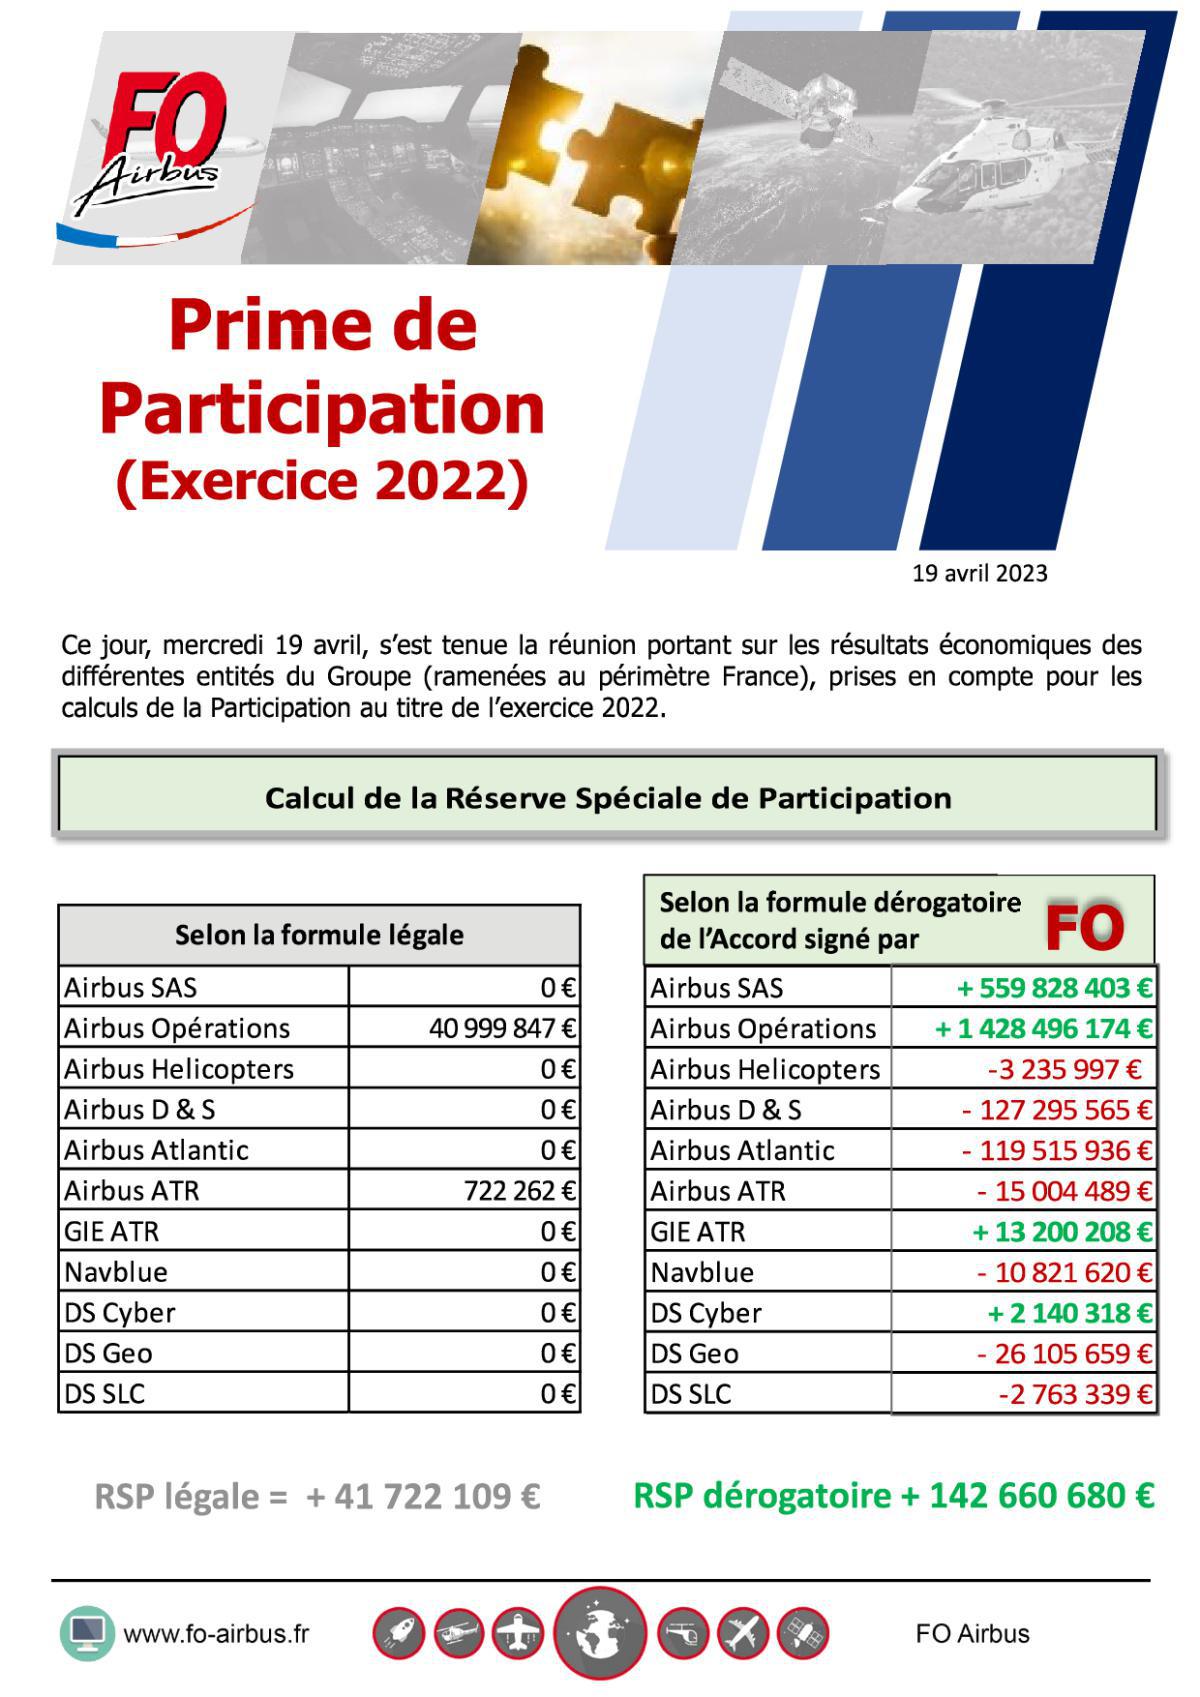 Prime de Participation 2023 (Exercice 2022)